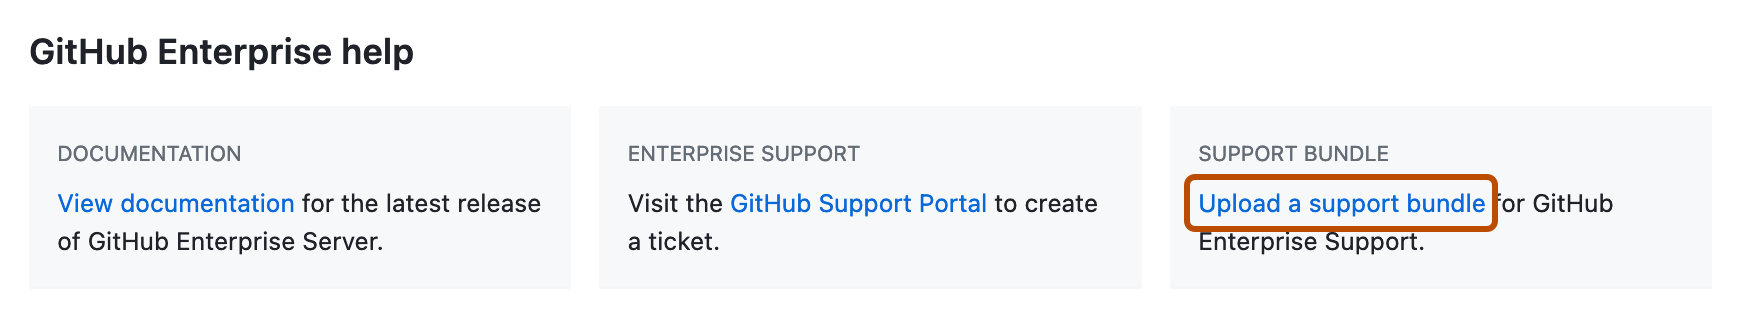 엔터프라이즈 설정 페이지의 "GitHub Enterprise 도움말" 섹션 스크린샷. "지원 번들 링크 업로드"가 진한 주황색 사각형으로 강조 표시되어 있습니다.